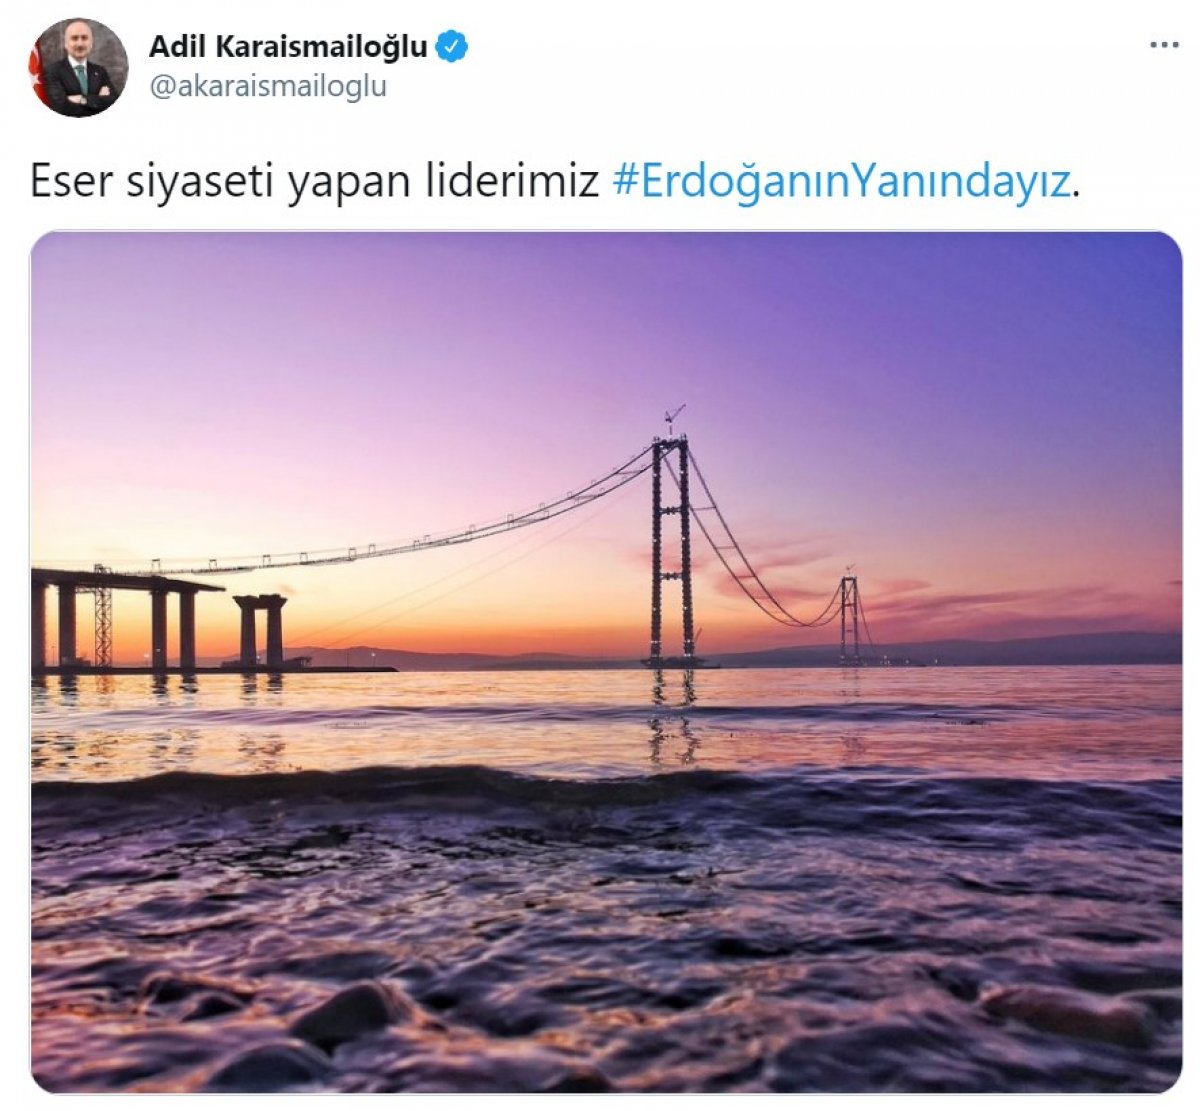 Cumhurbaşkanı Erdoğan a destek tweet leri 1 milyonu aştı #16